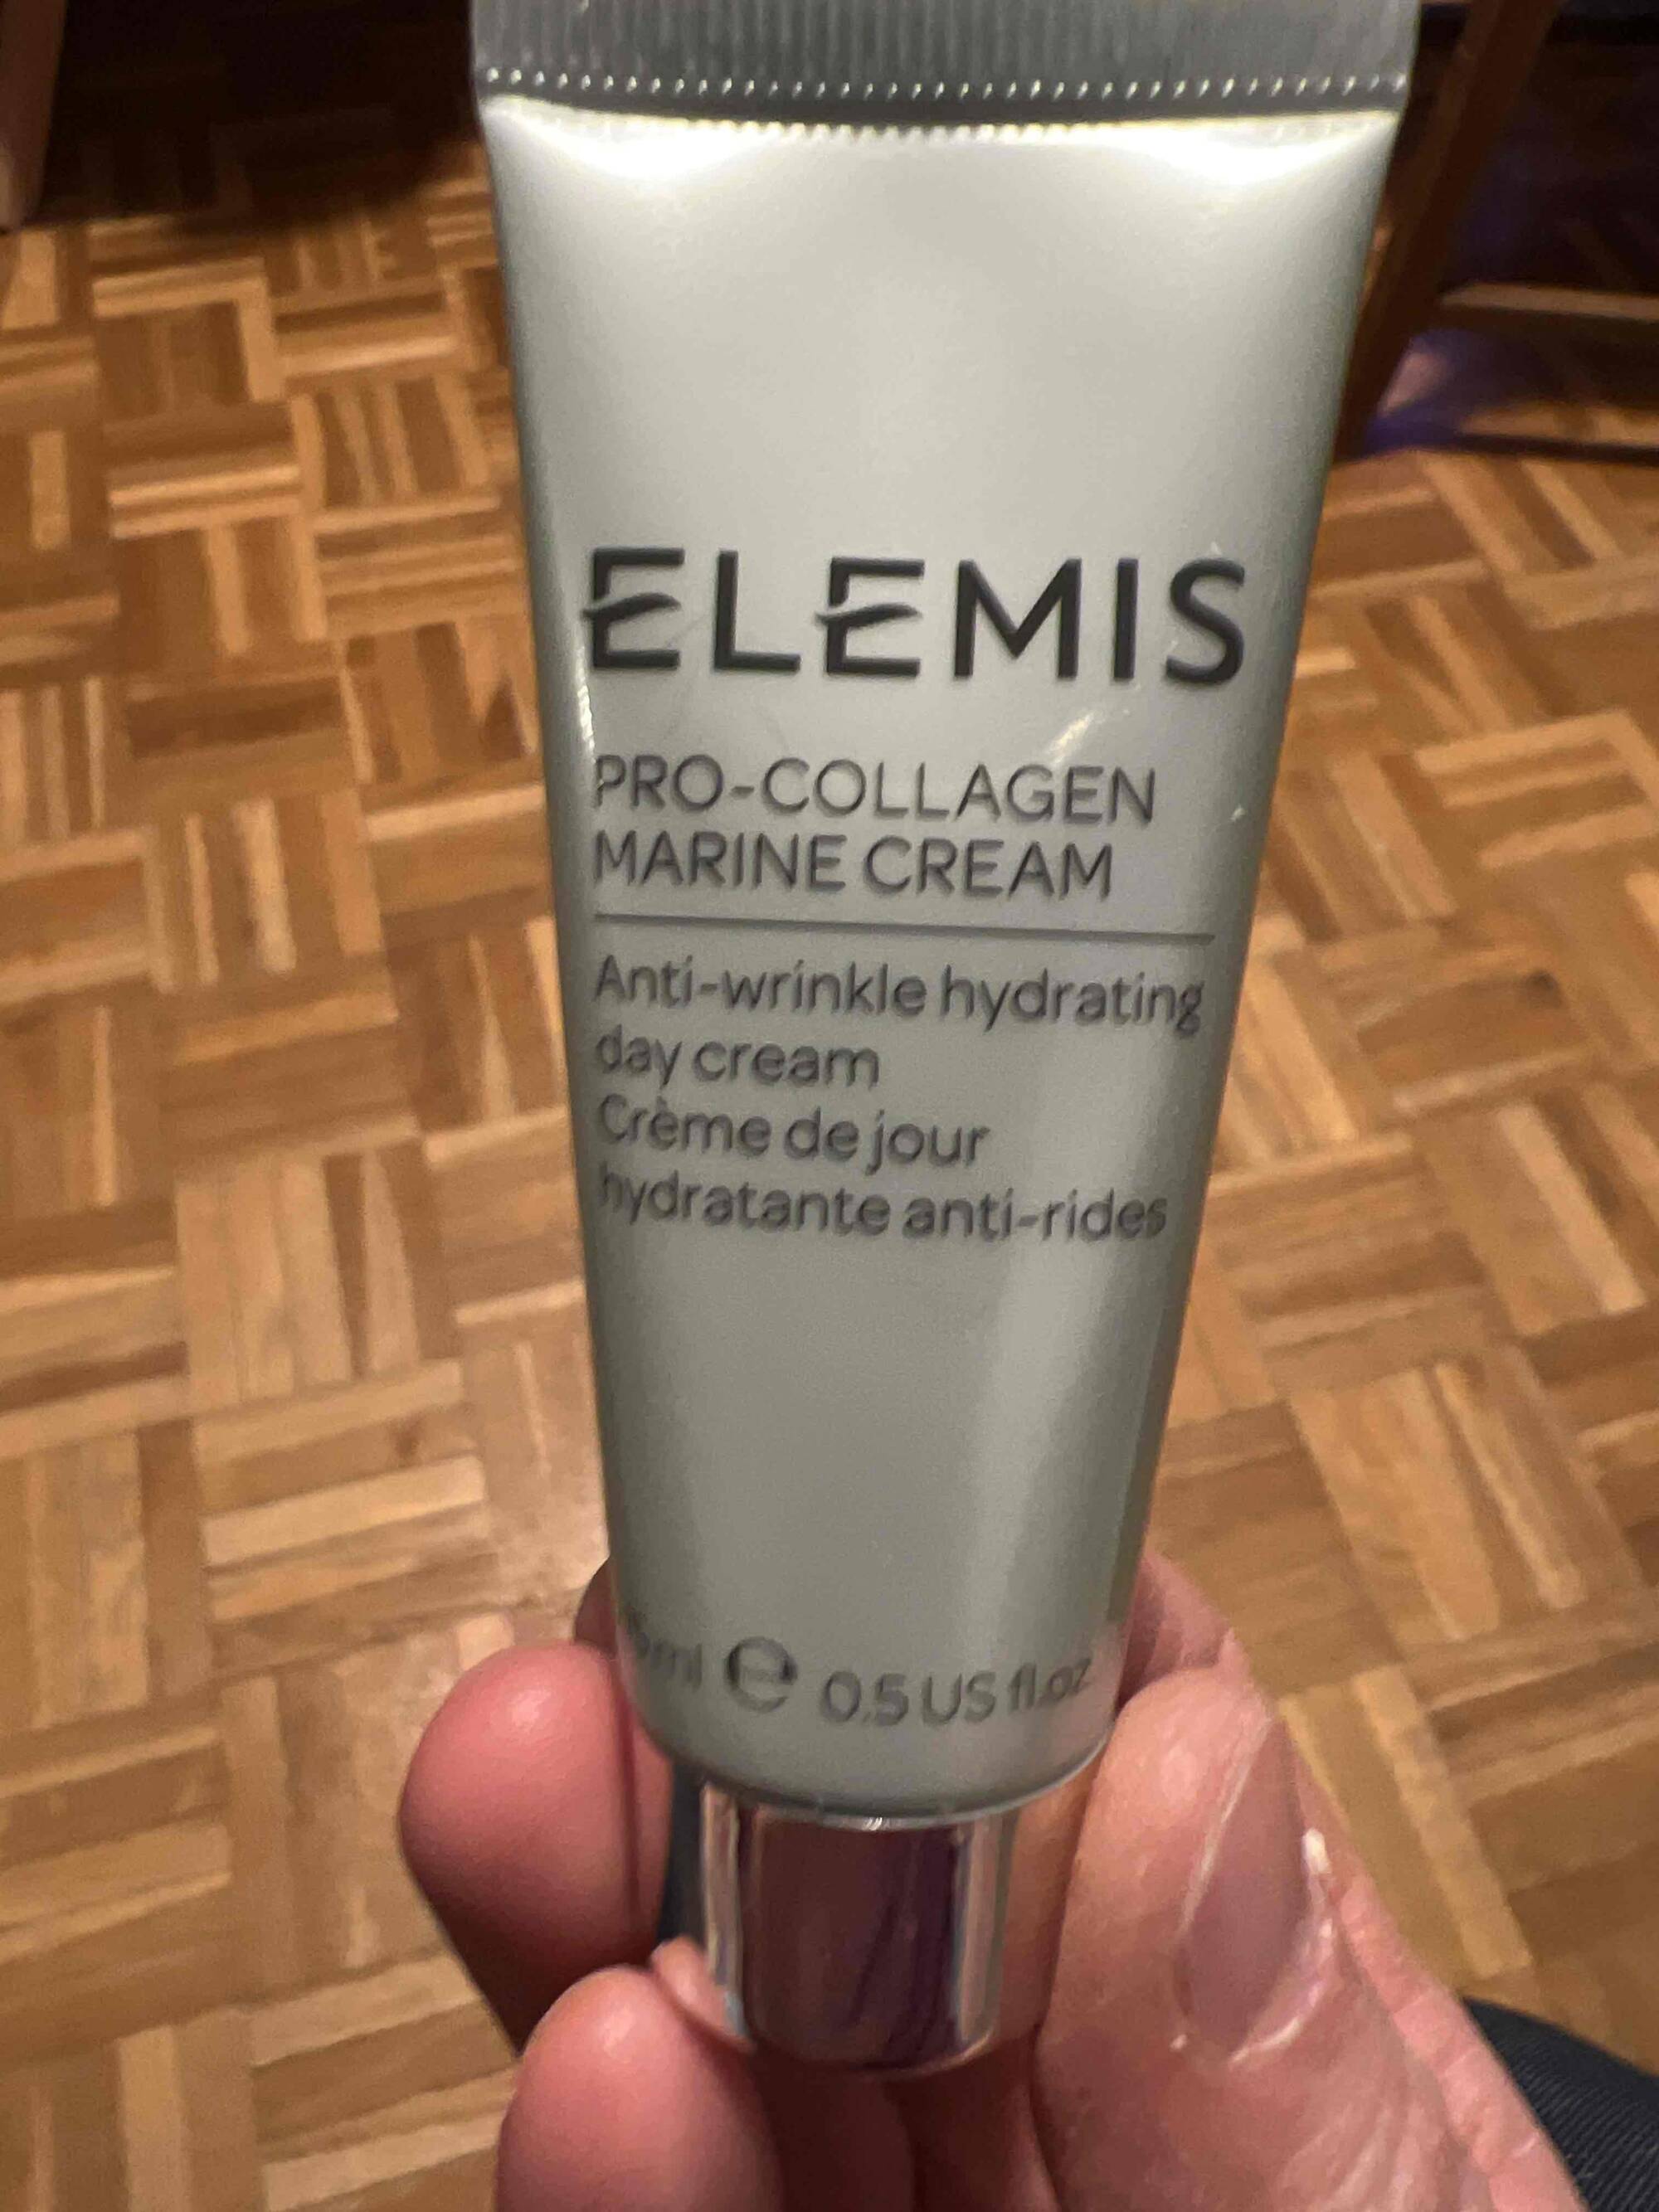 ELEMIS - Pro-collagen marine - Crème de jour hydratante anti-rides